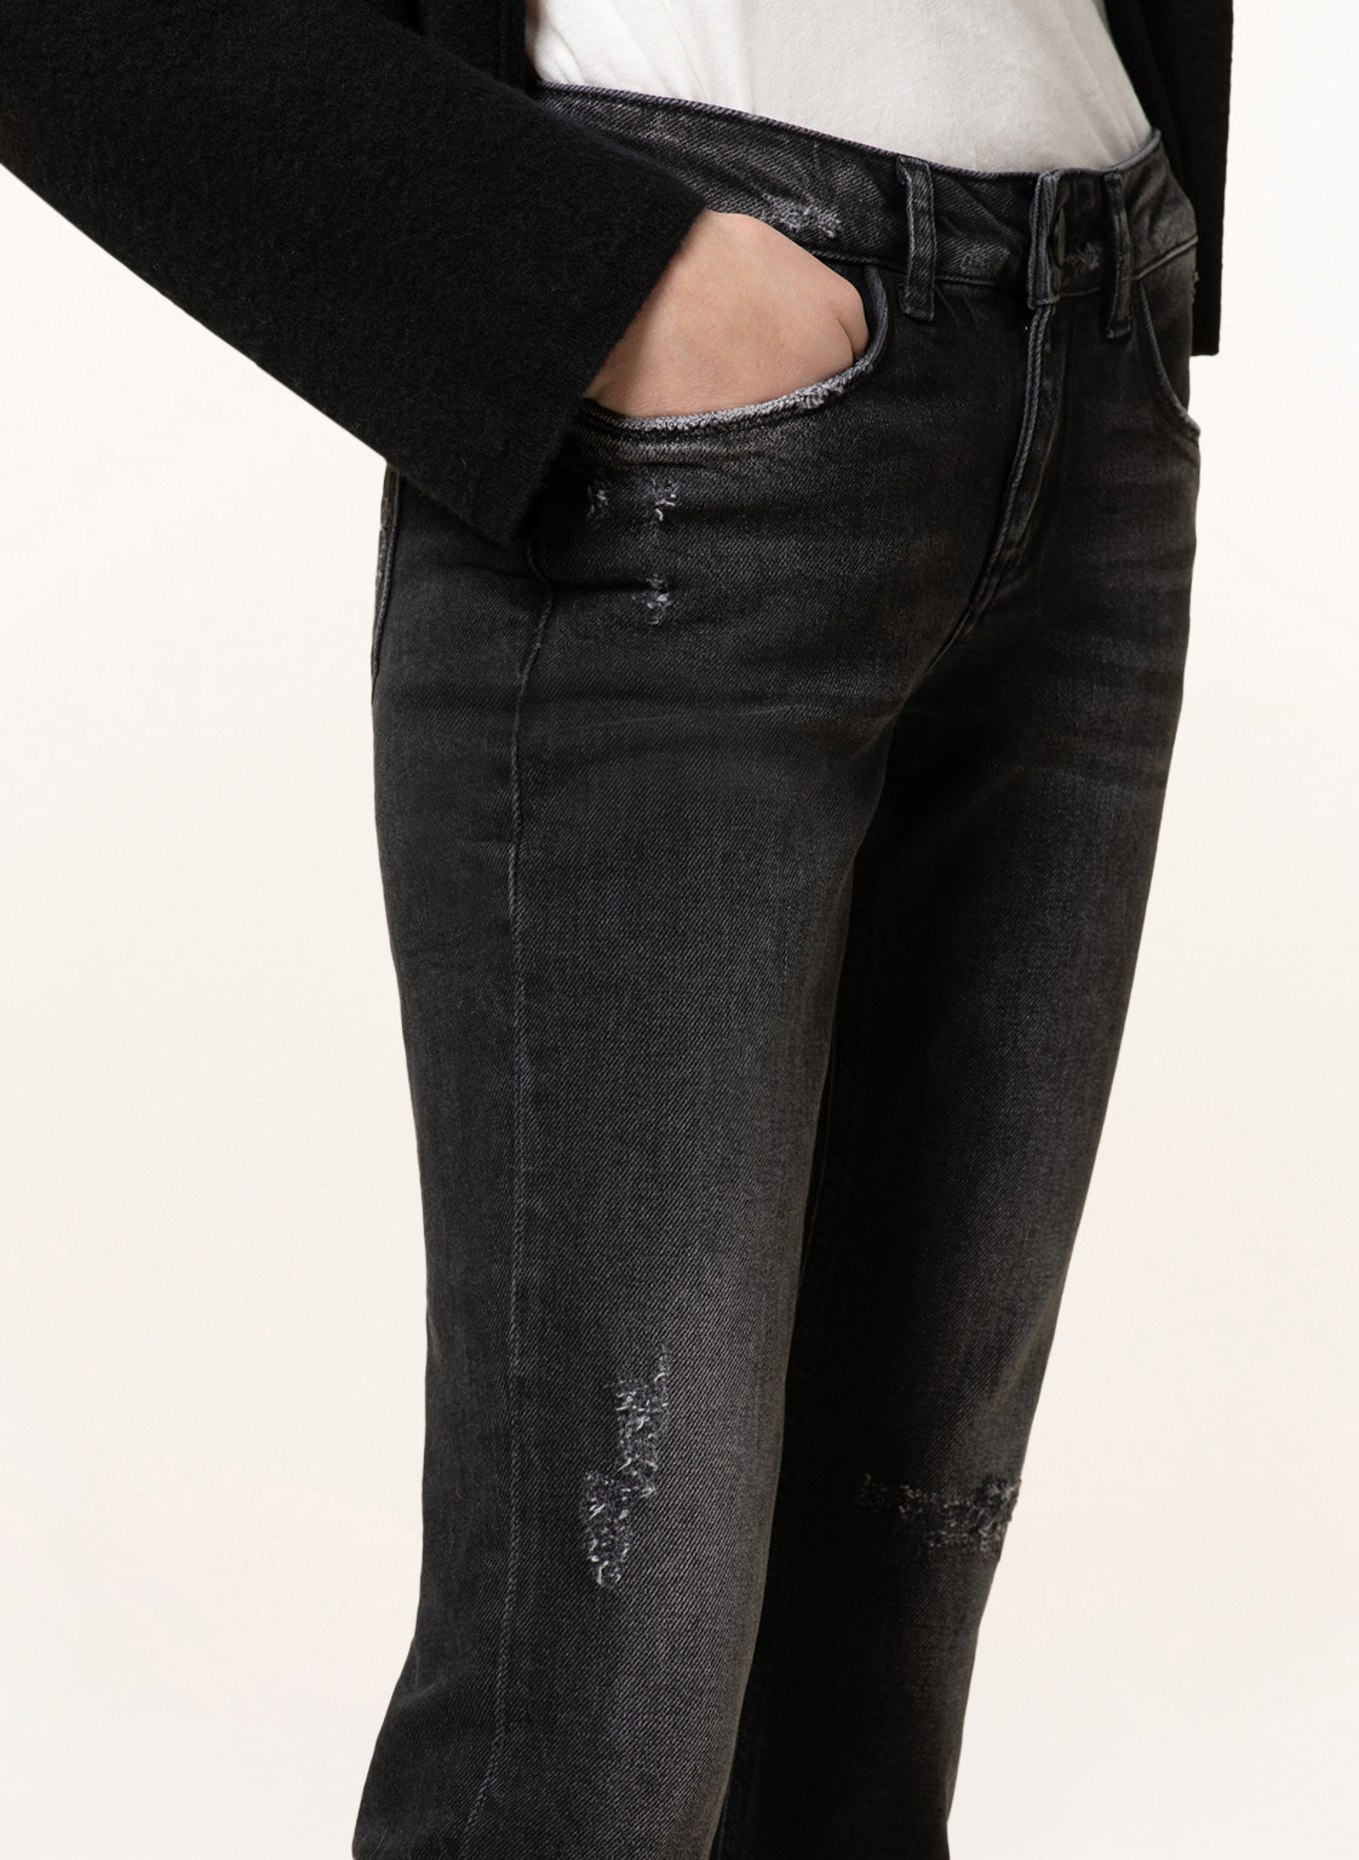 GOLDGARN DENIM Skinny jeans JUNGBUSCH, Color: 1110 vintageblack (Image 5)